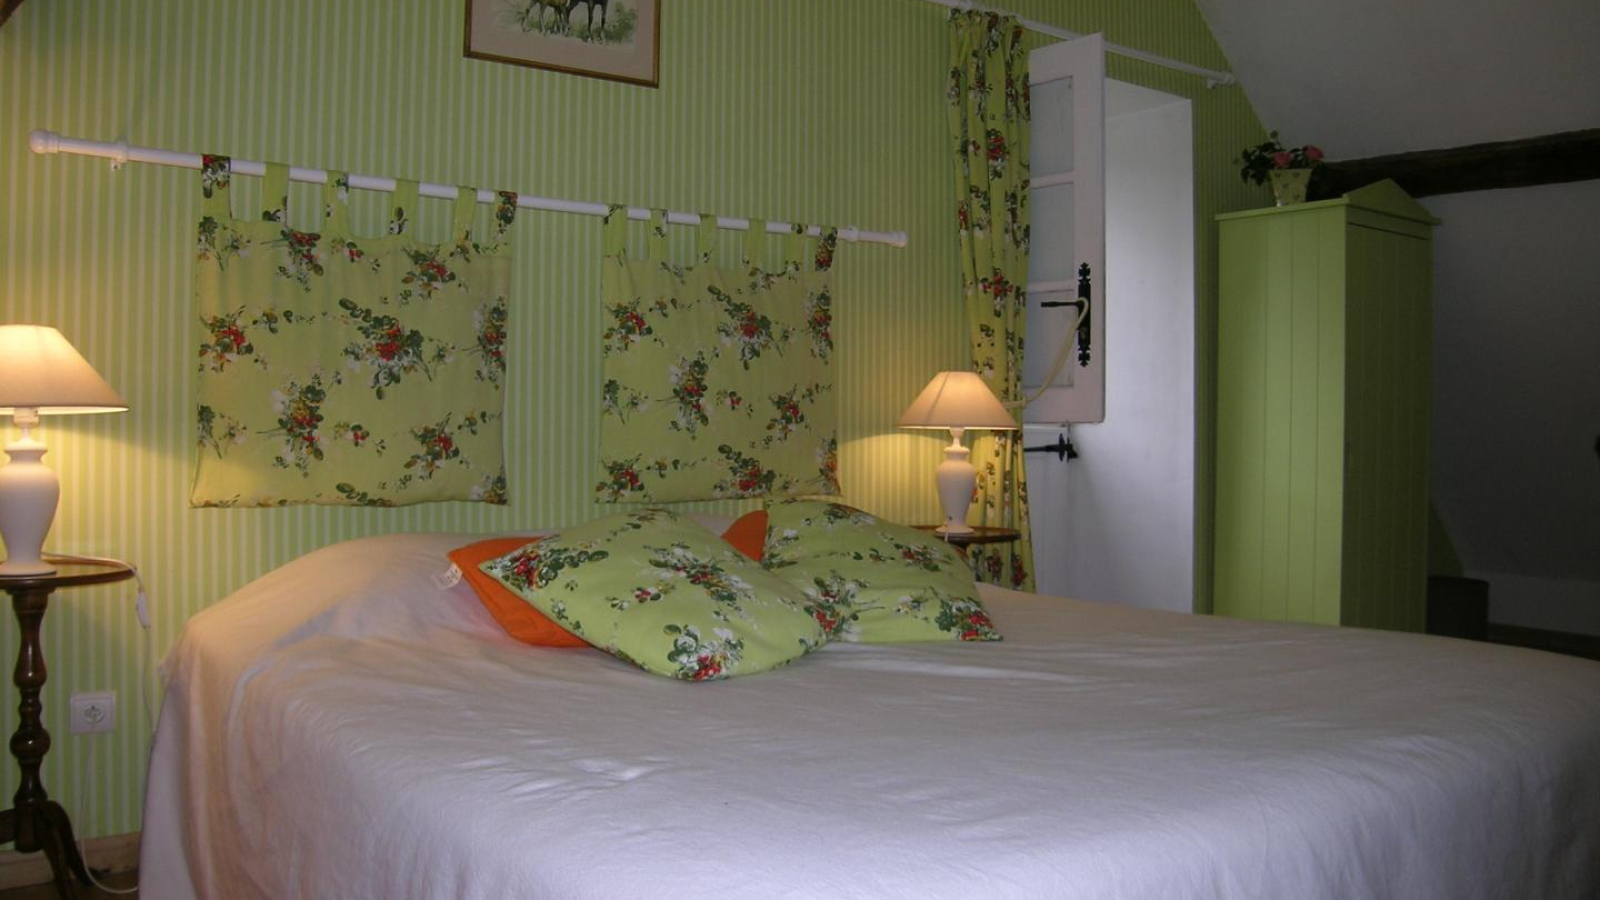 chambres d'hôtes Le Vieux Bellevue à VIEURE dans l'Allier en Auvergne, chambre vert anis